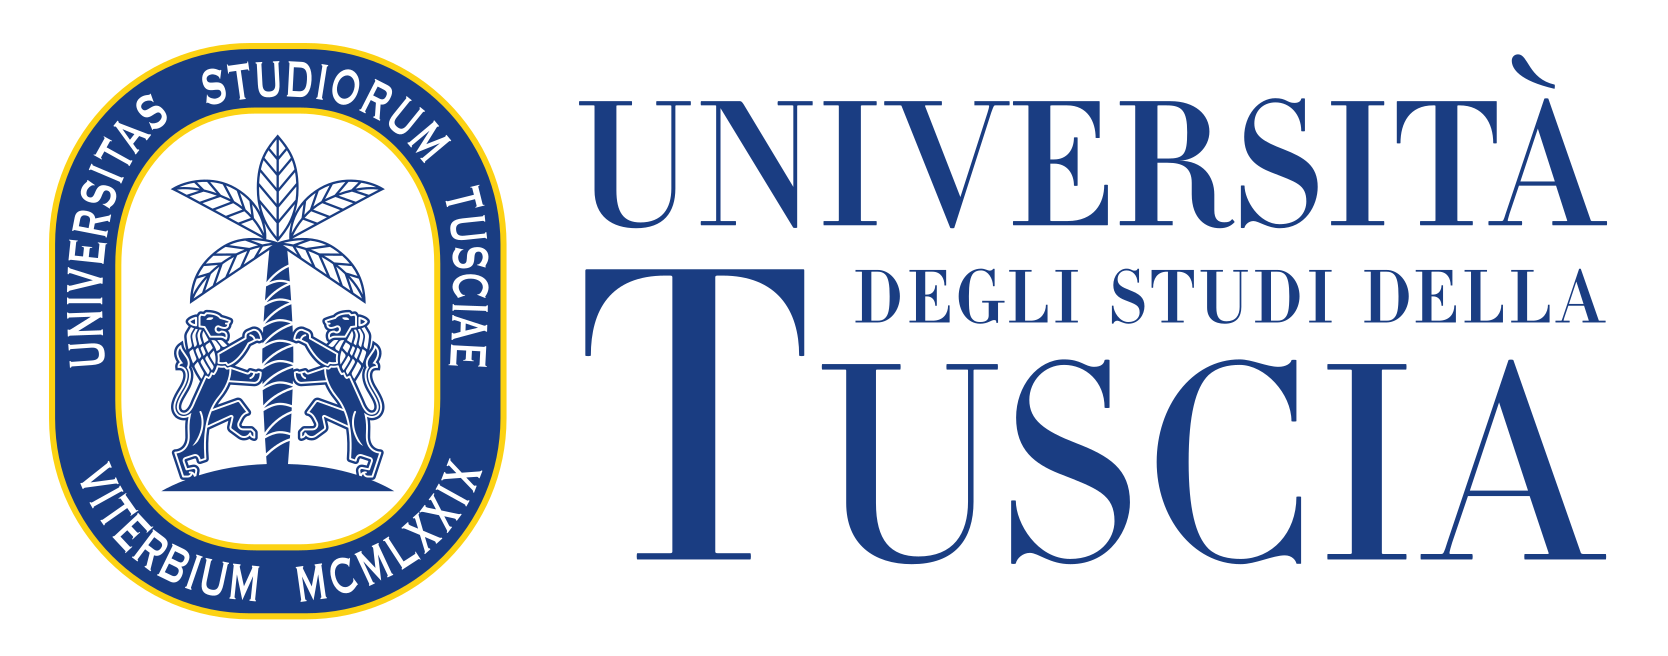 UNITUS logo